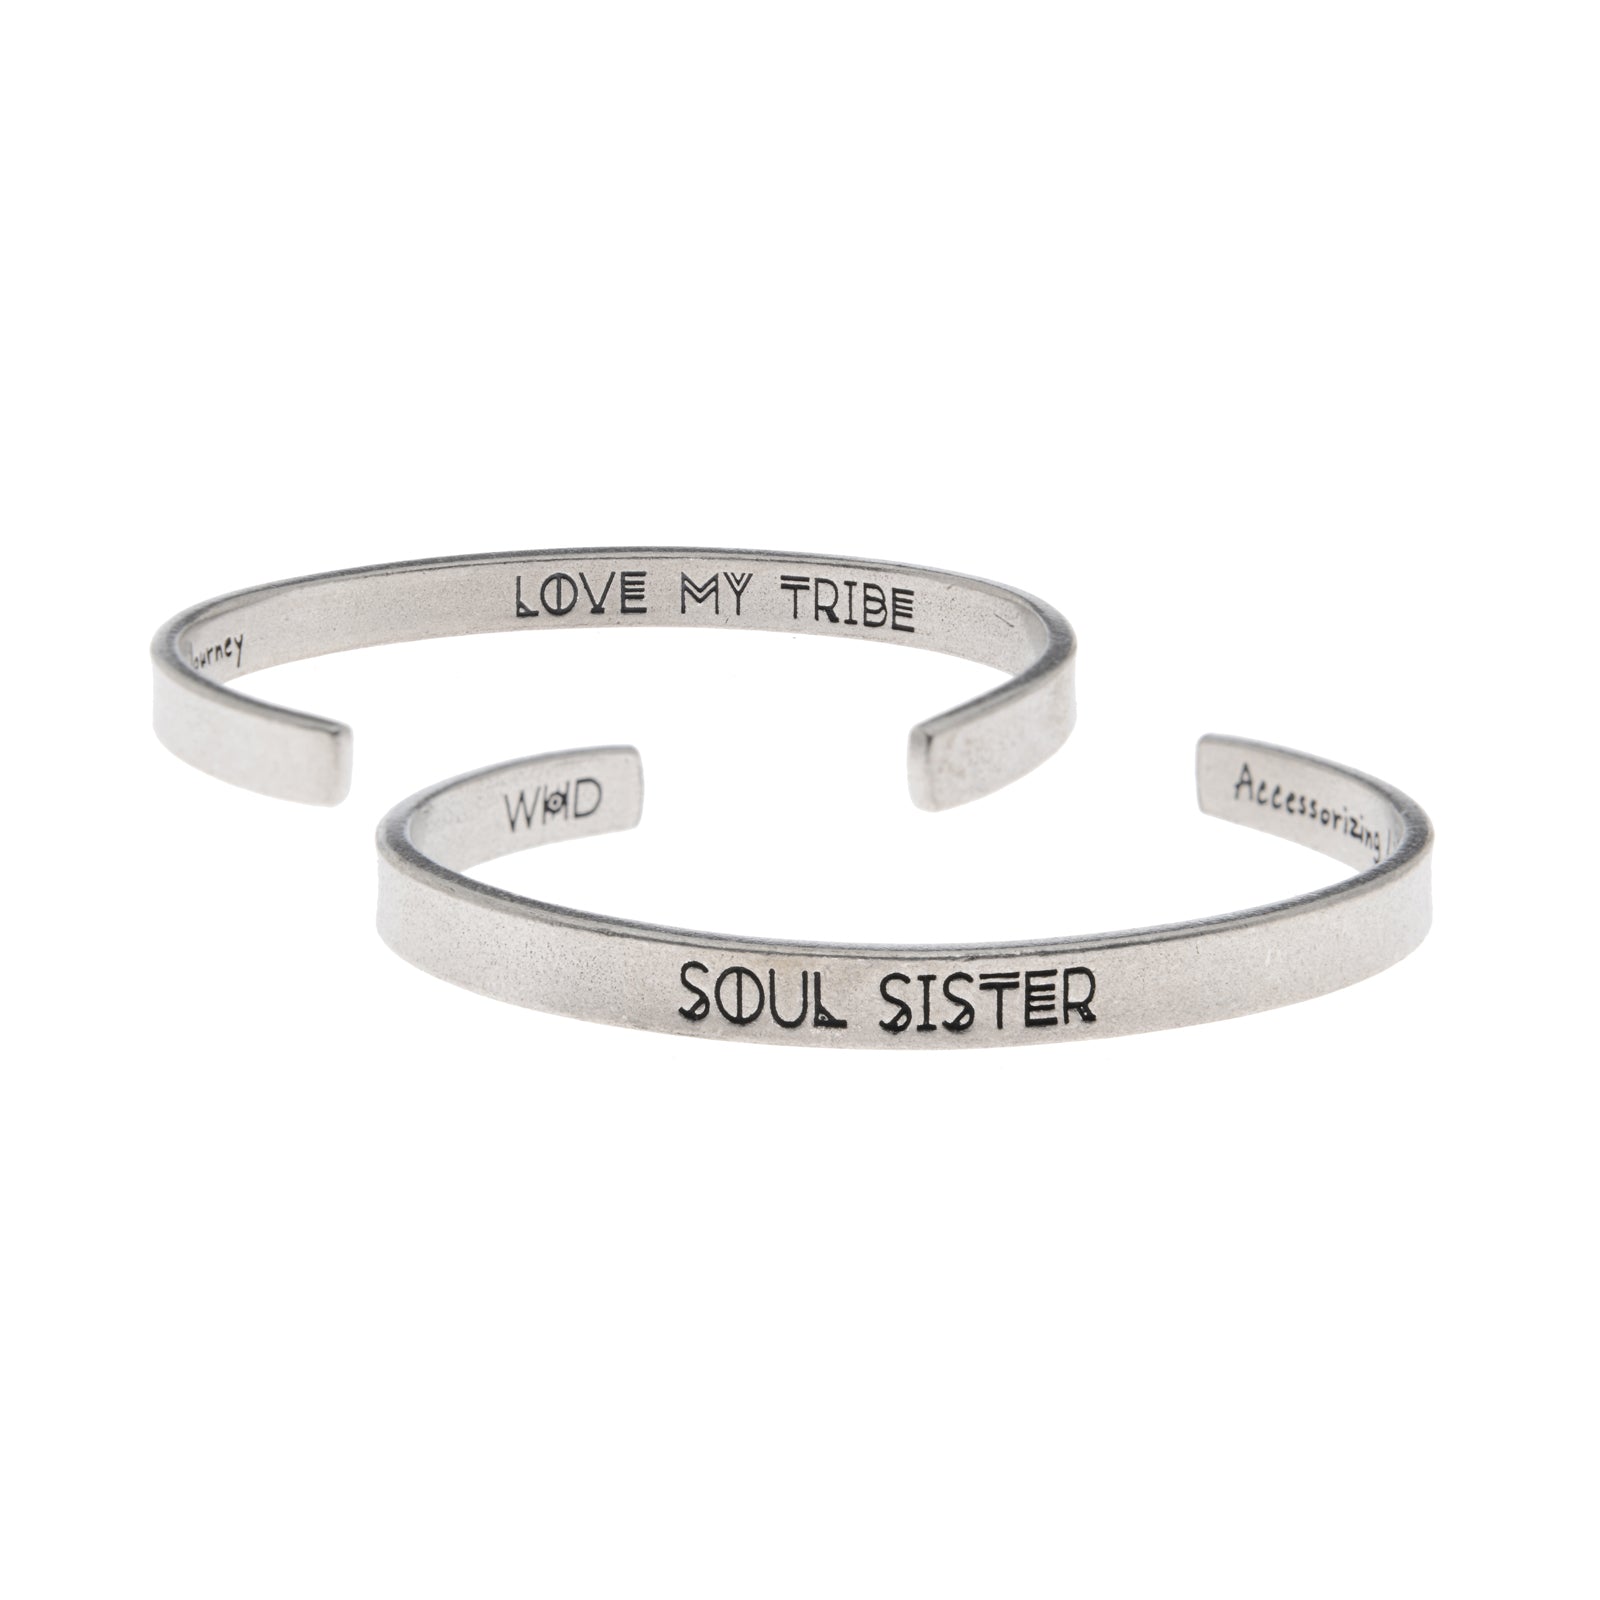 Soul Sister Quotable Cuff Bracelet